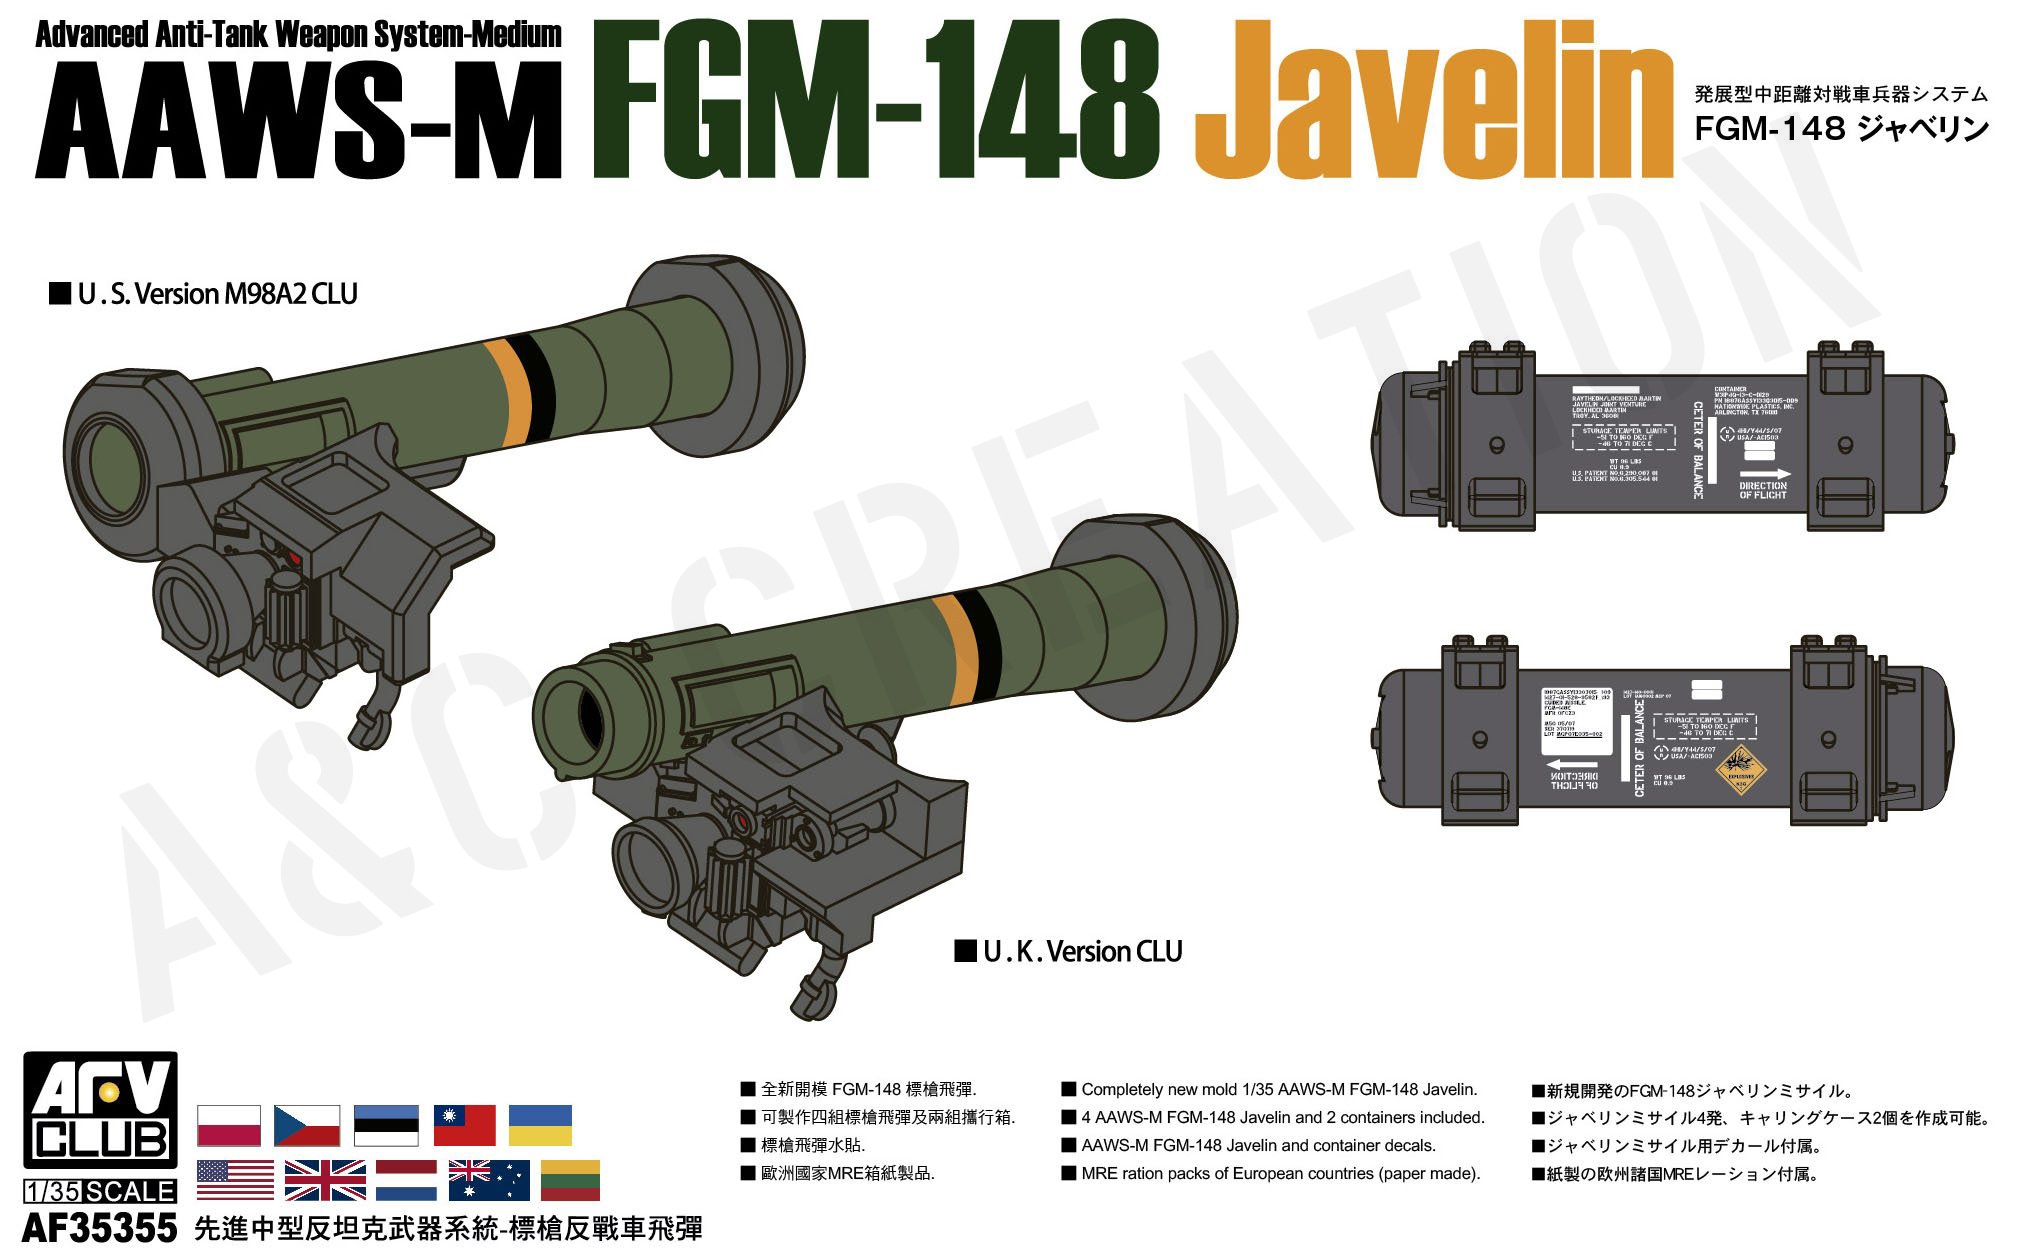 AF35355 AAWS-M FGM-148 Javelin